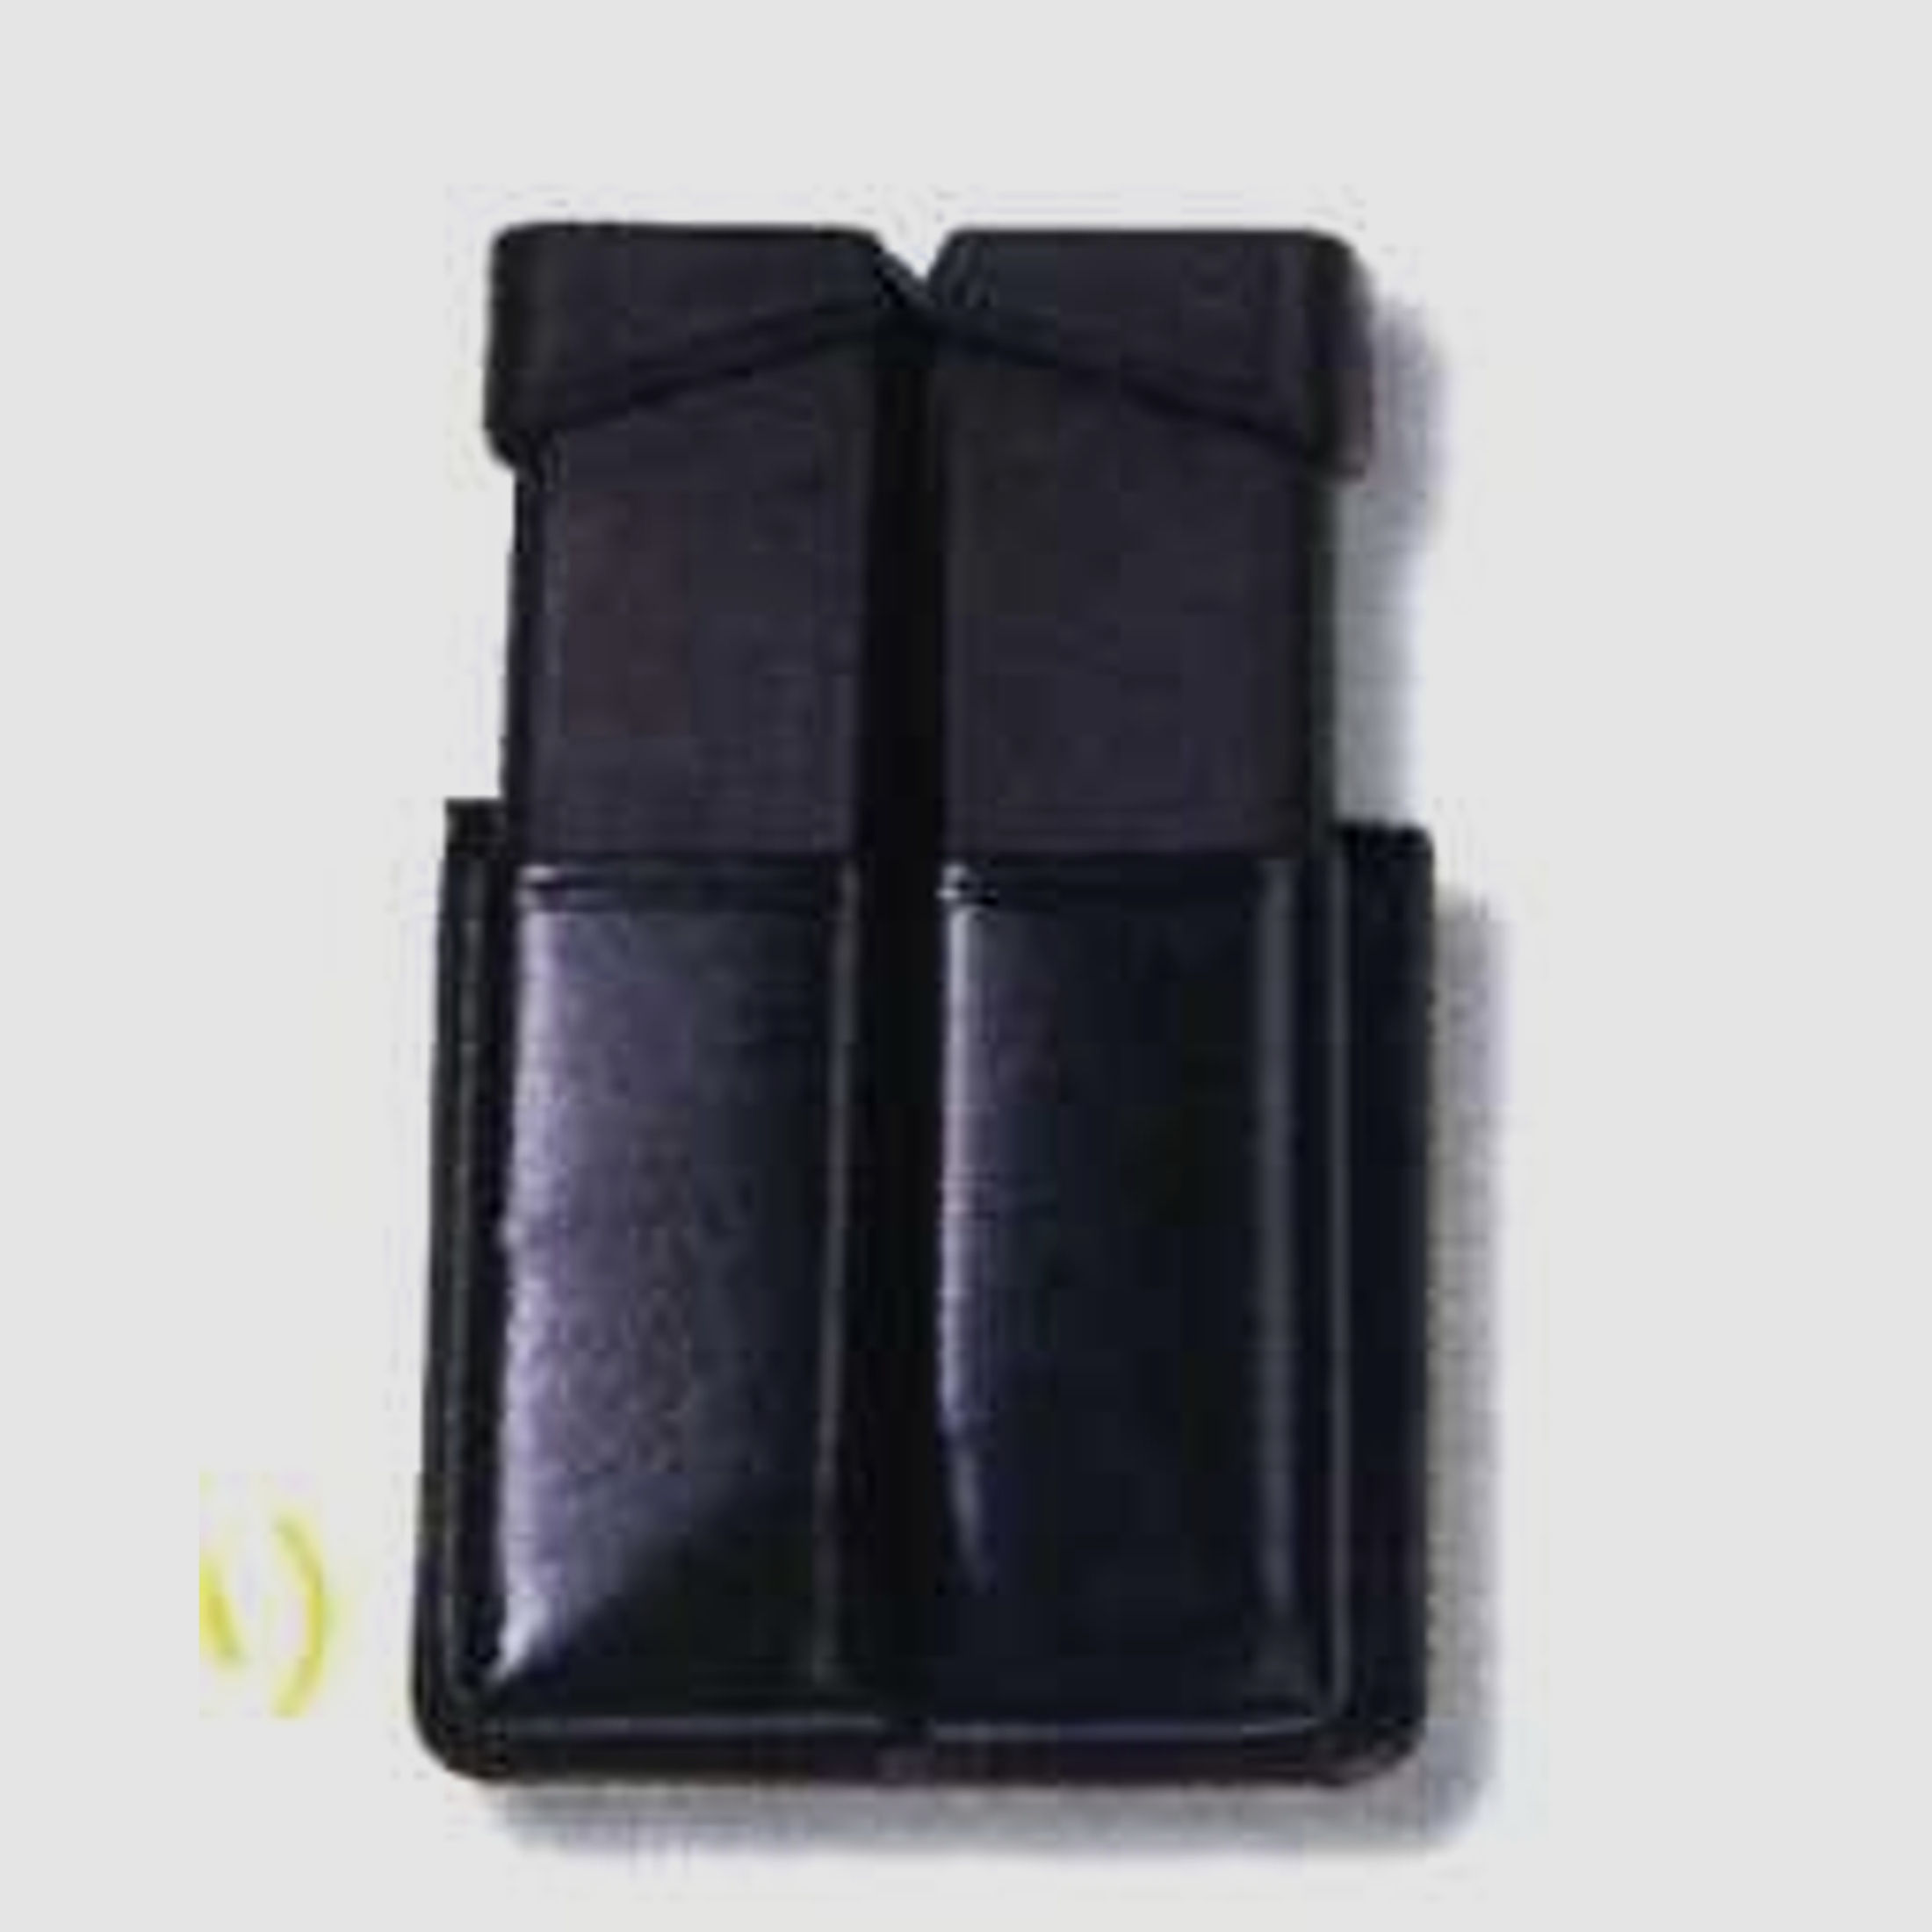 SICKINGER Magazintasche 9mm zweireihig doppelt schwarz 62821 Twin Box